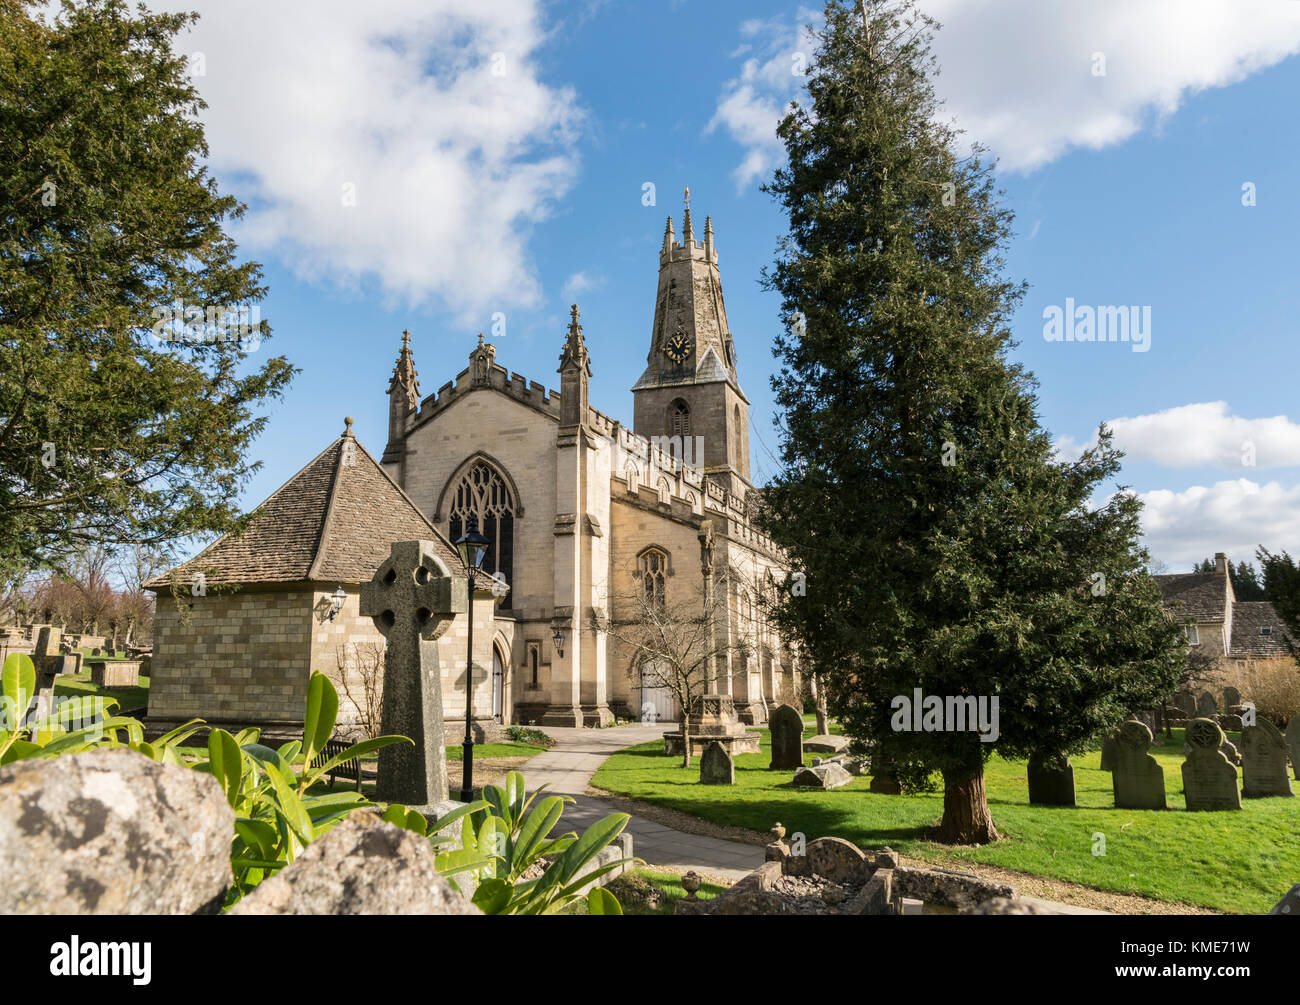 L'église paroissiale de la sainte trinité de minchinhampton, Gloucestershire, Royaume-Uni. minchinhampton est un ancien bourg dans les Cotswolds, Royaume-Uni Banque D'Images